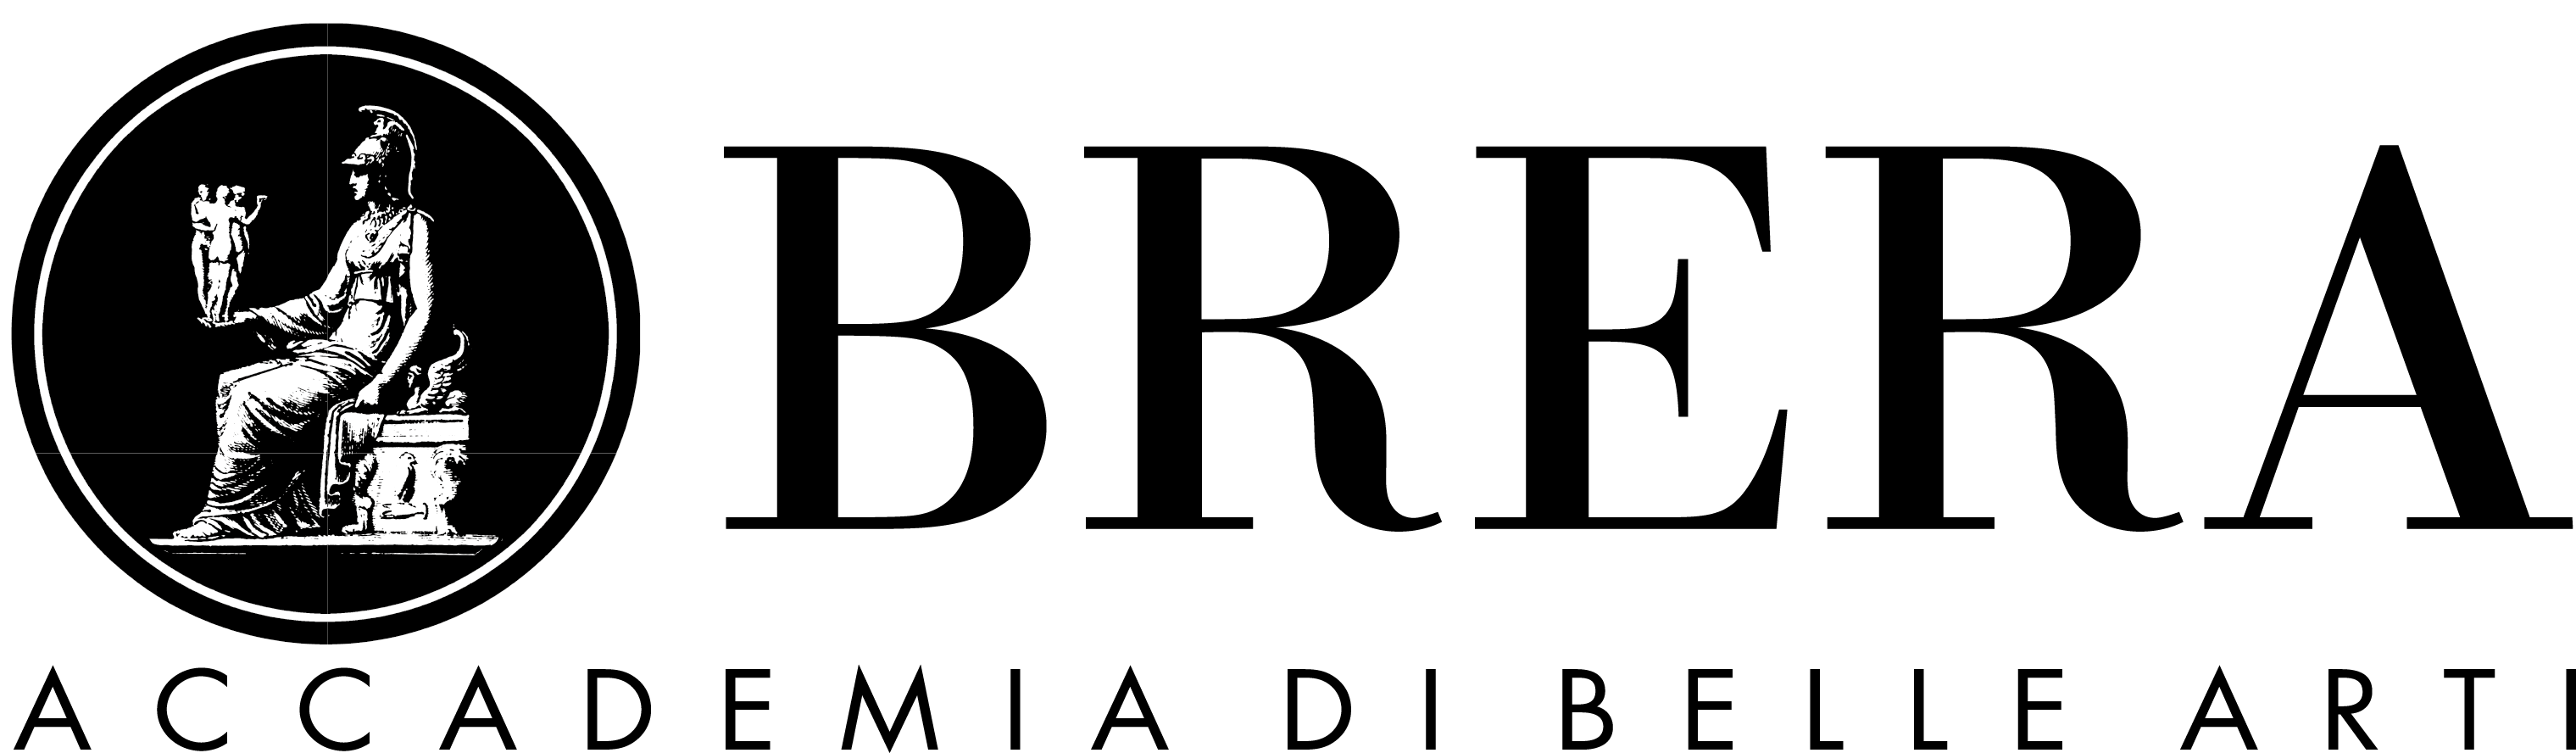 Logo Accademia di Brera